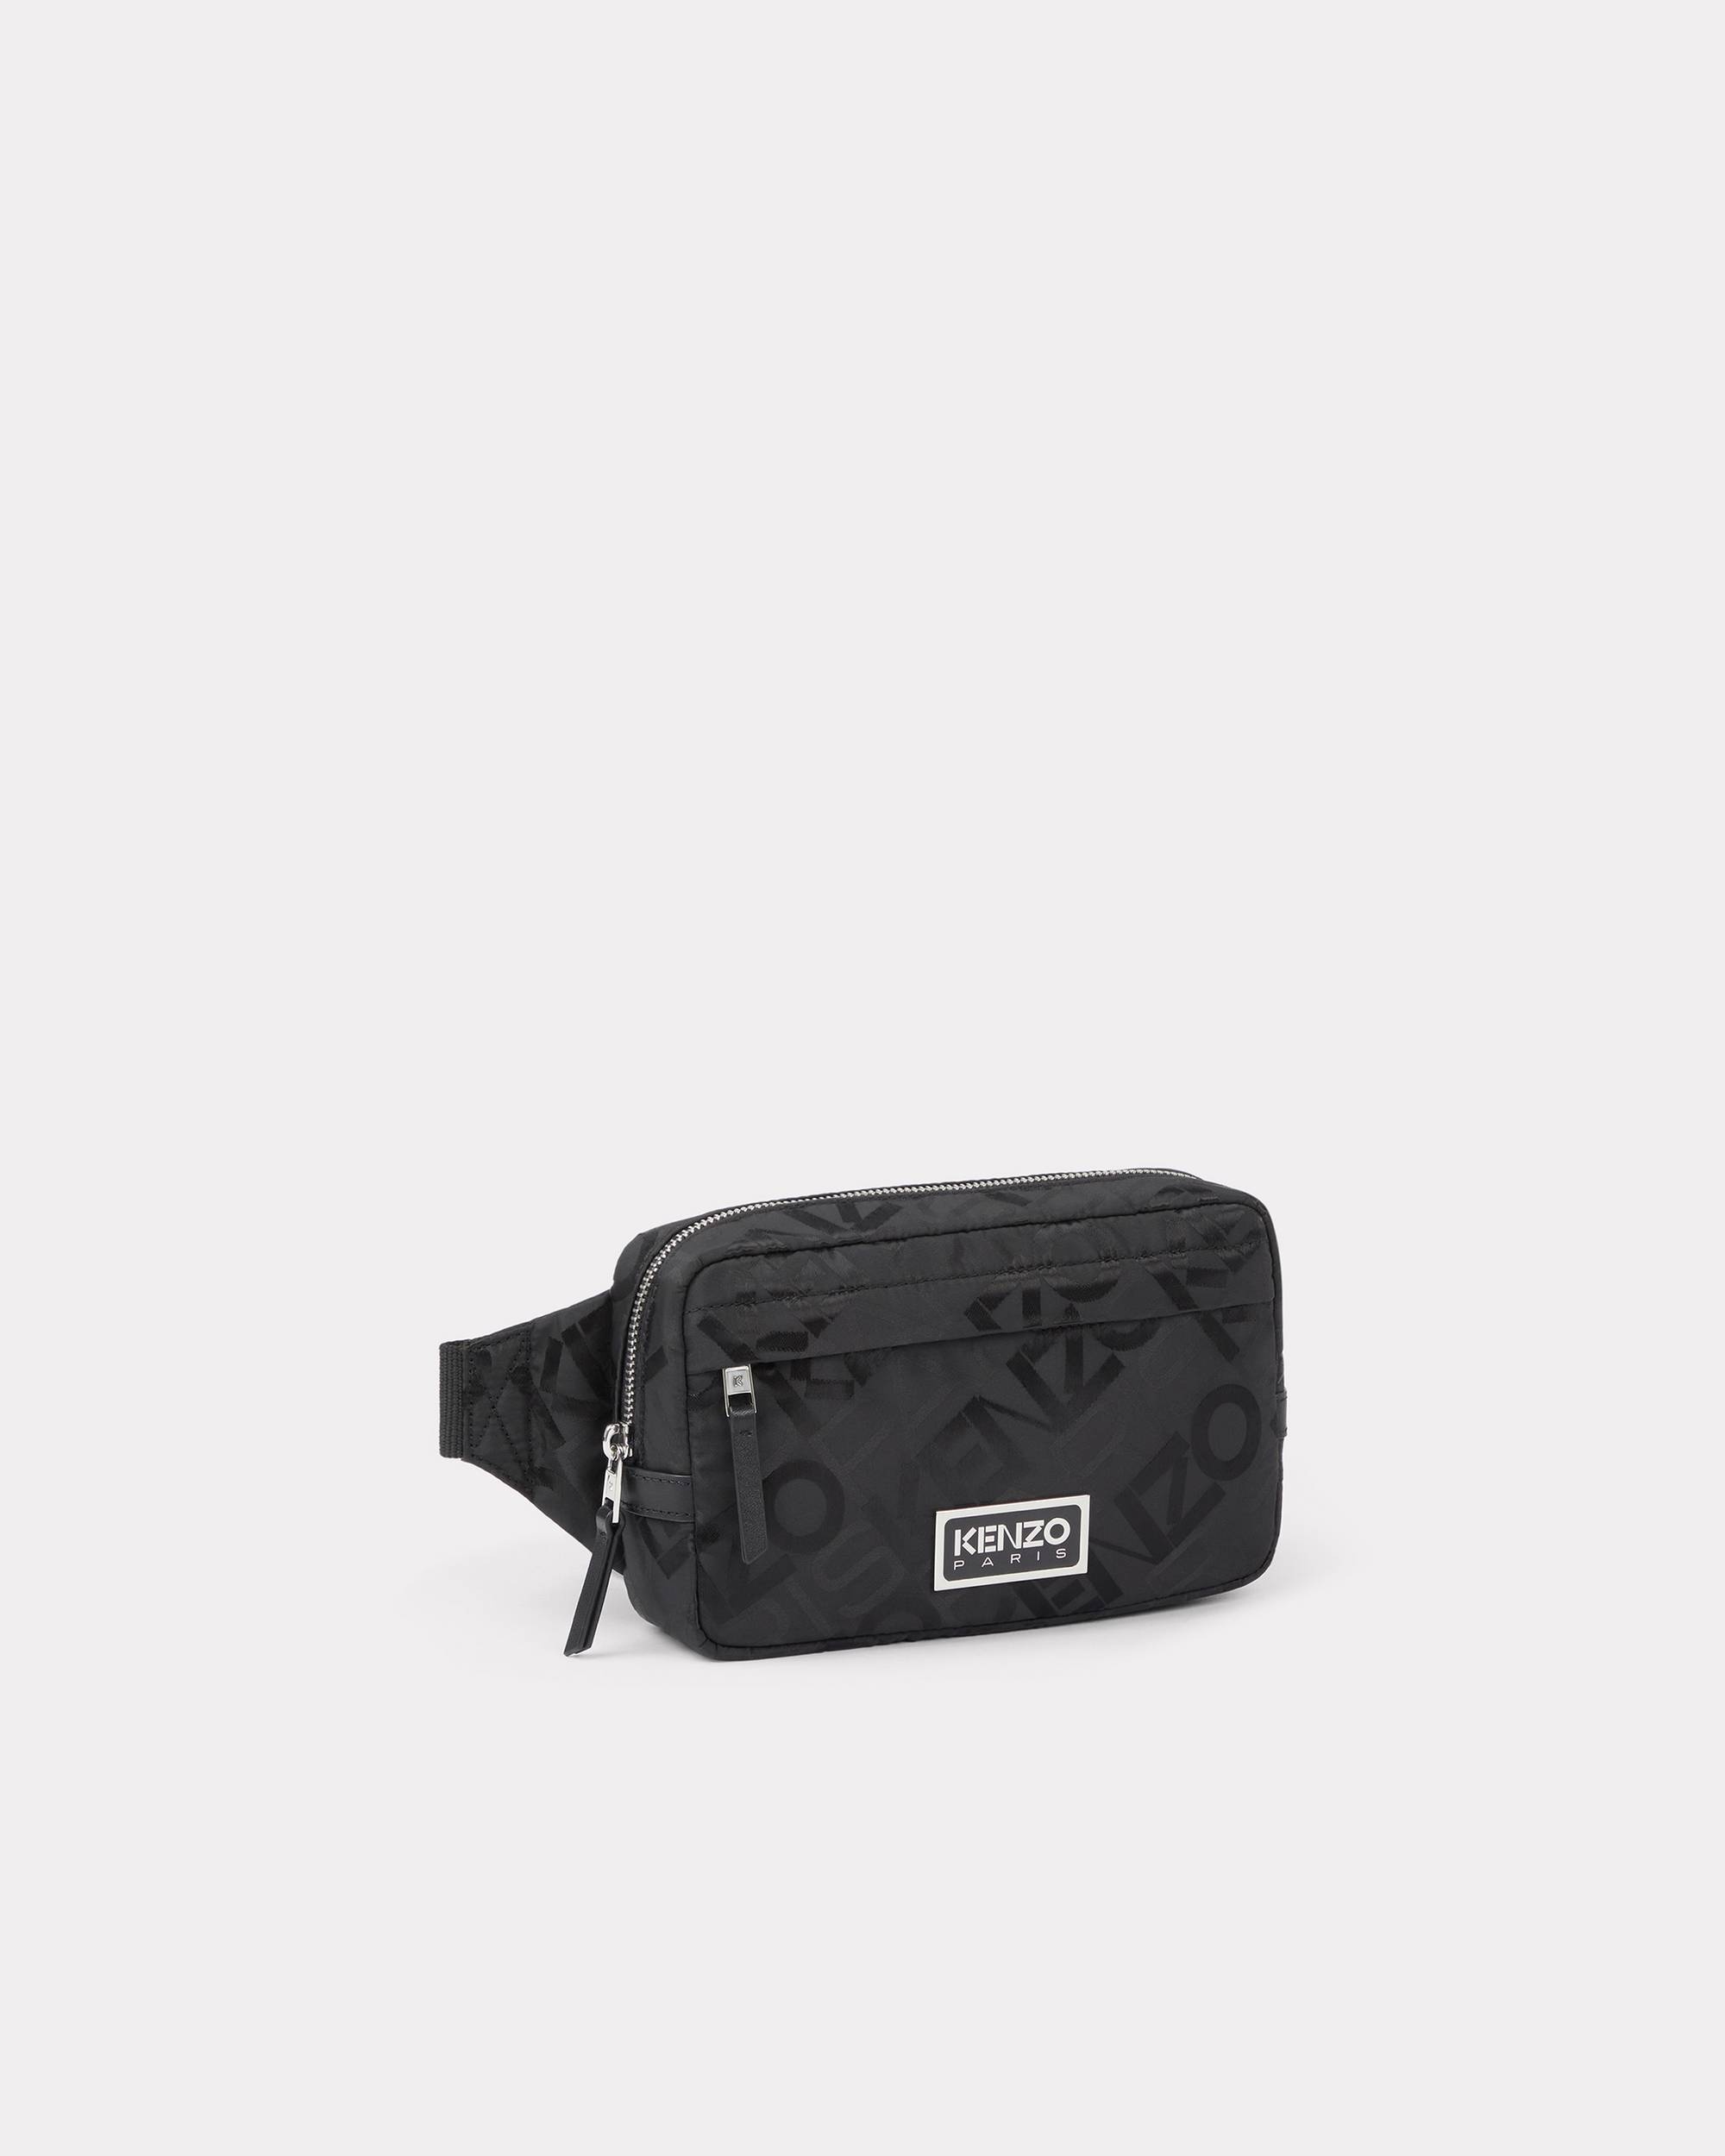 'KENZO Paris' belt bag - 1